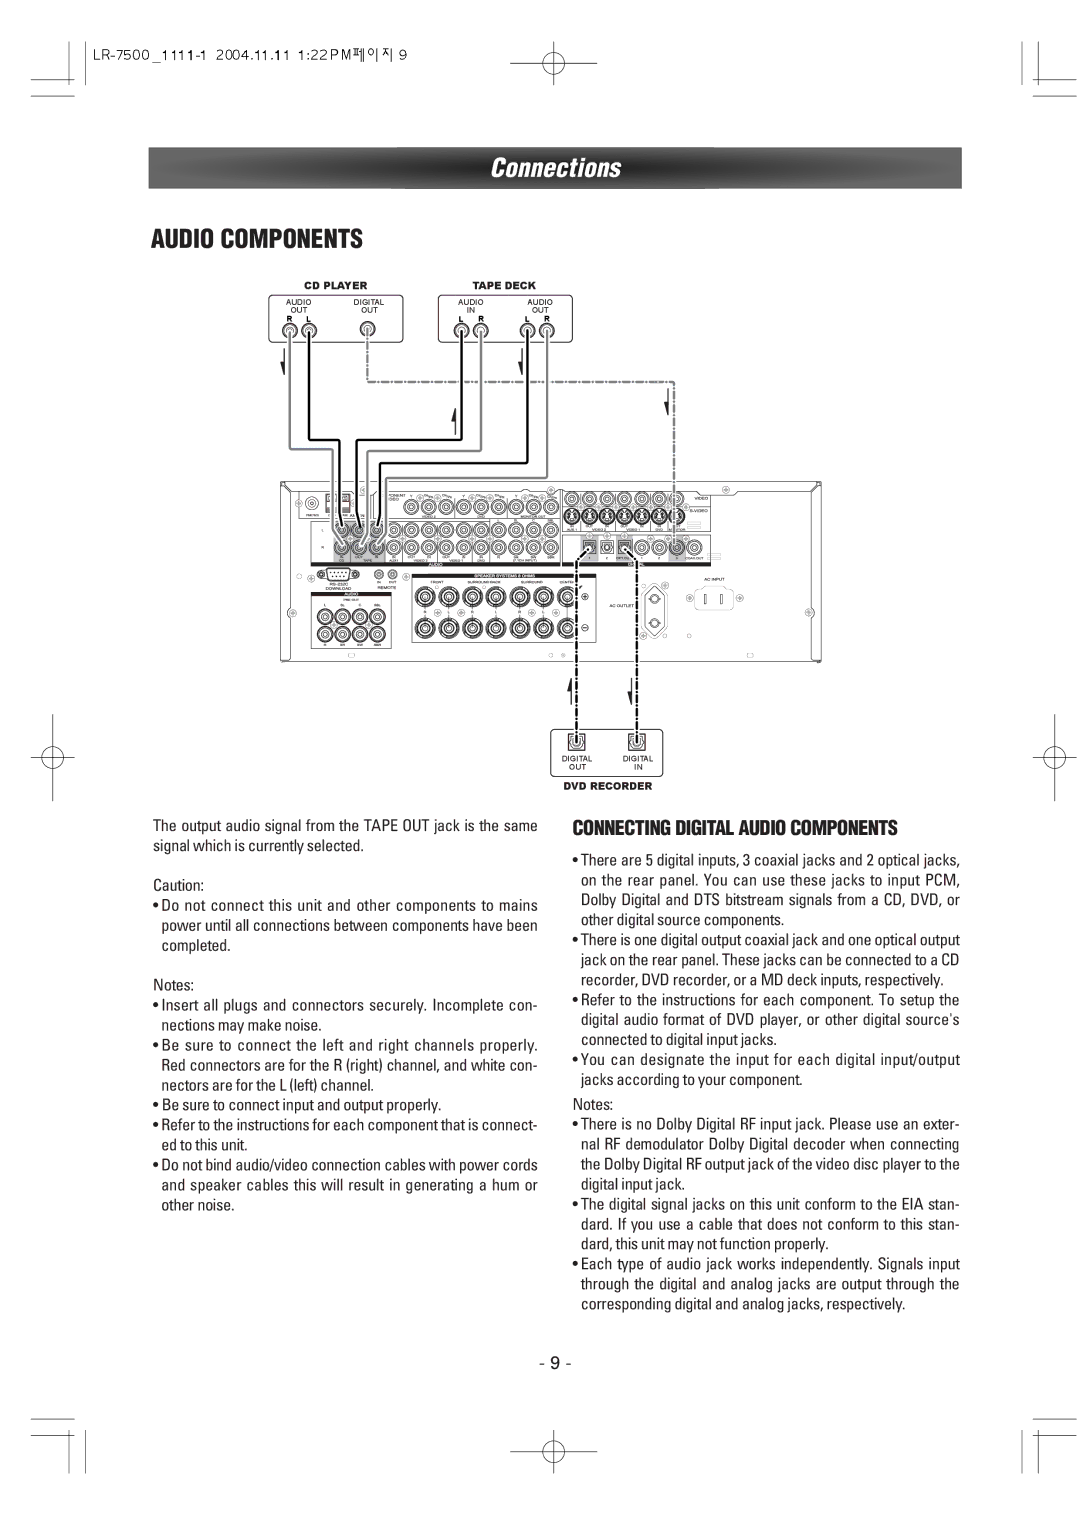 Dantax LR-7500 manual Audio Components 